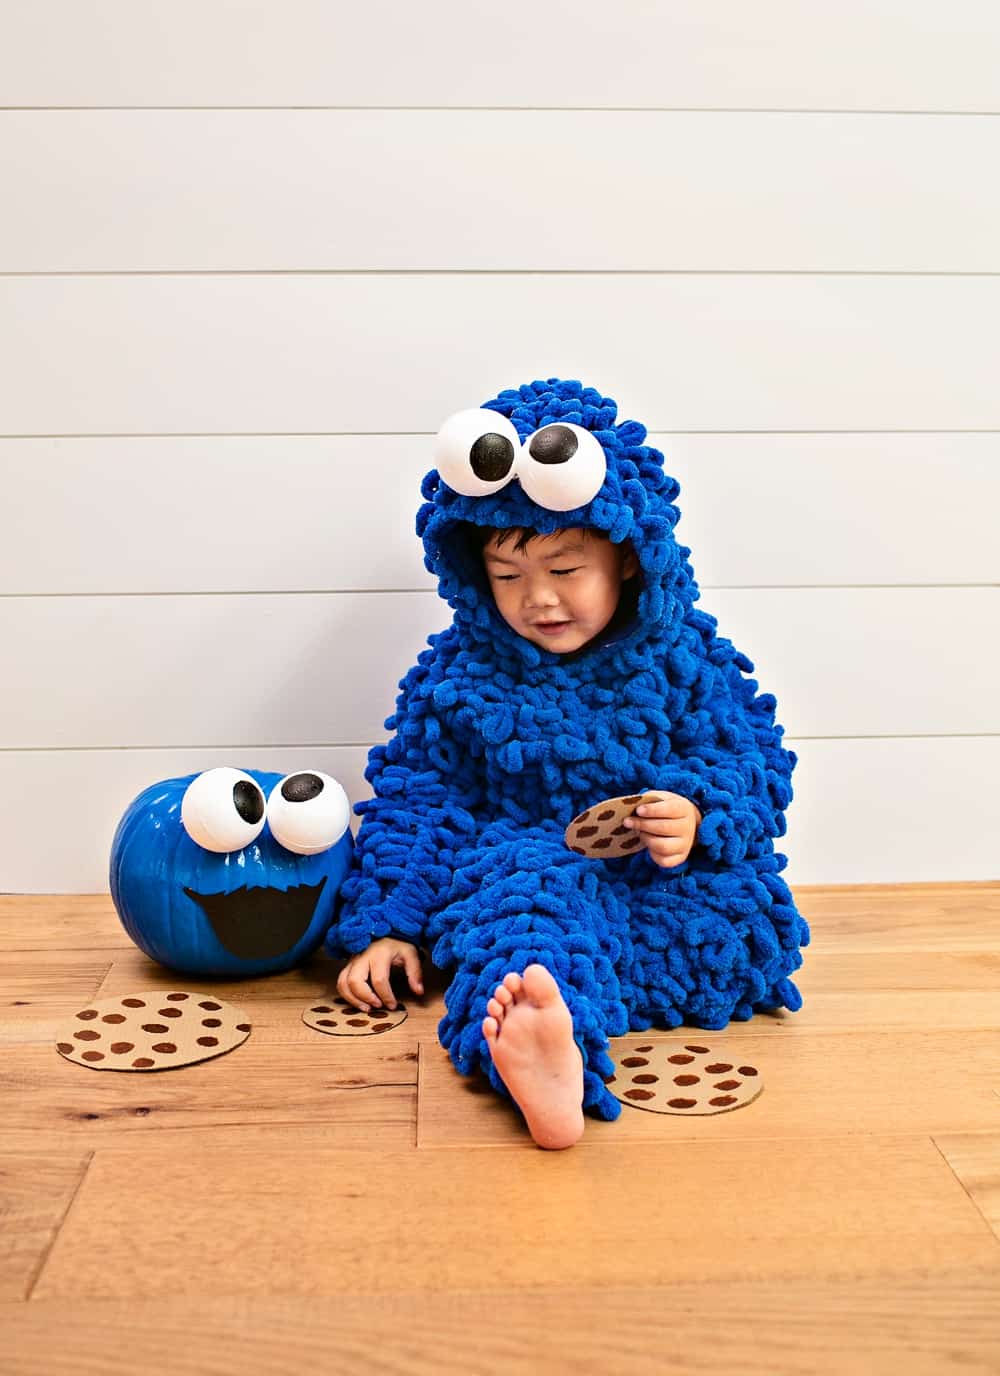 DIY Cookie Monster Costume